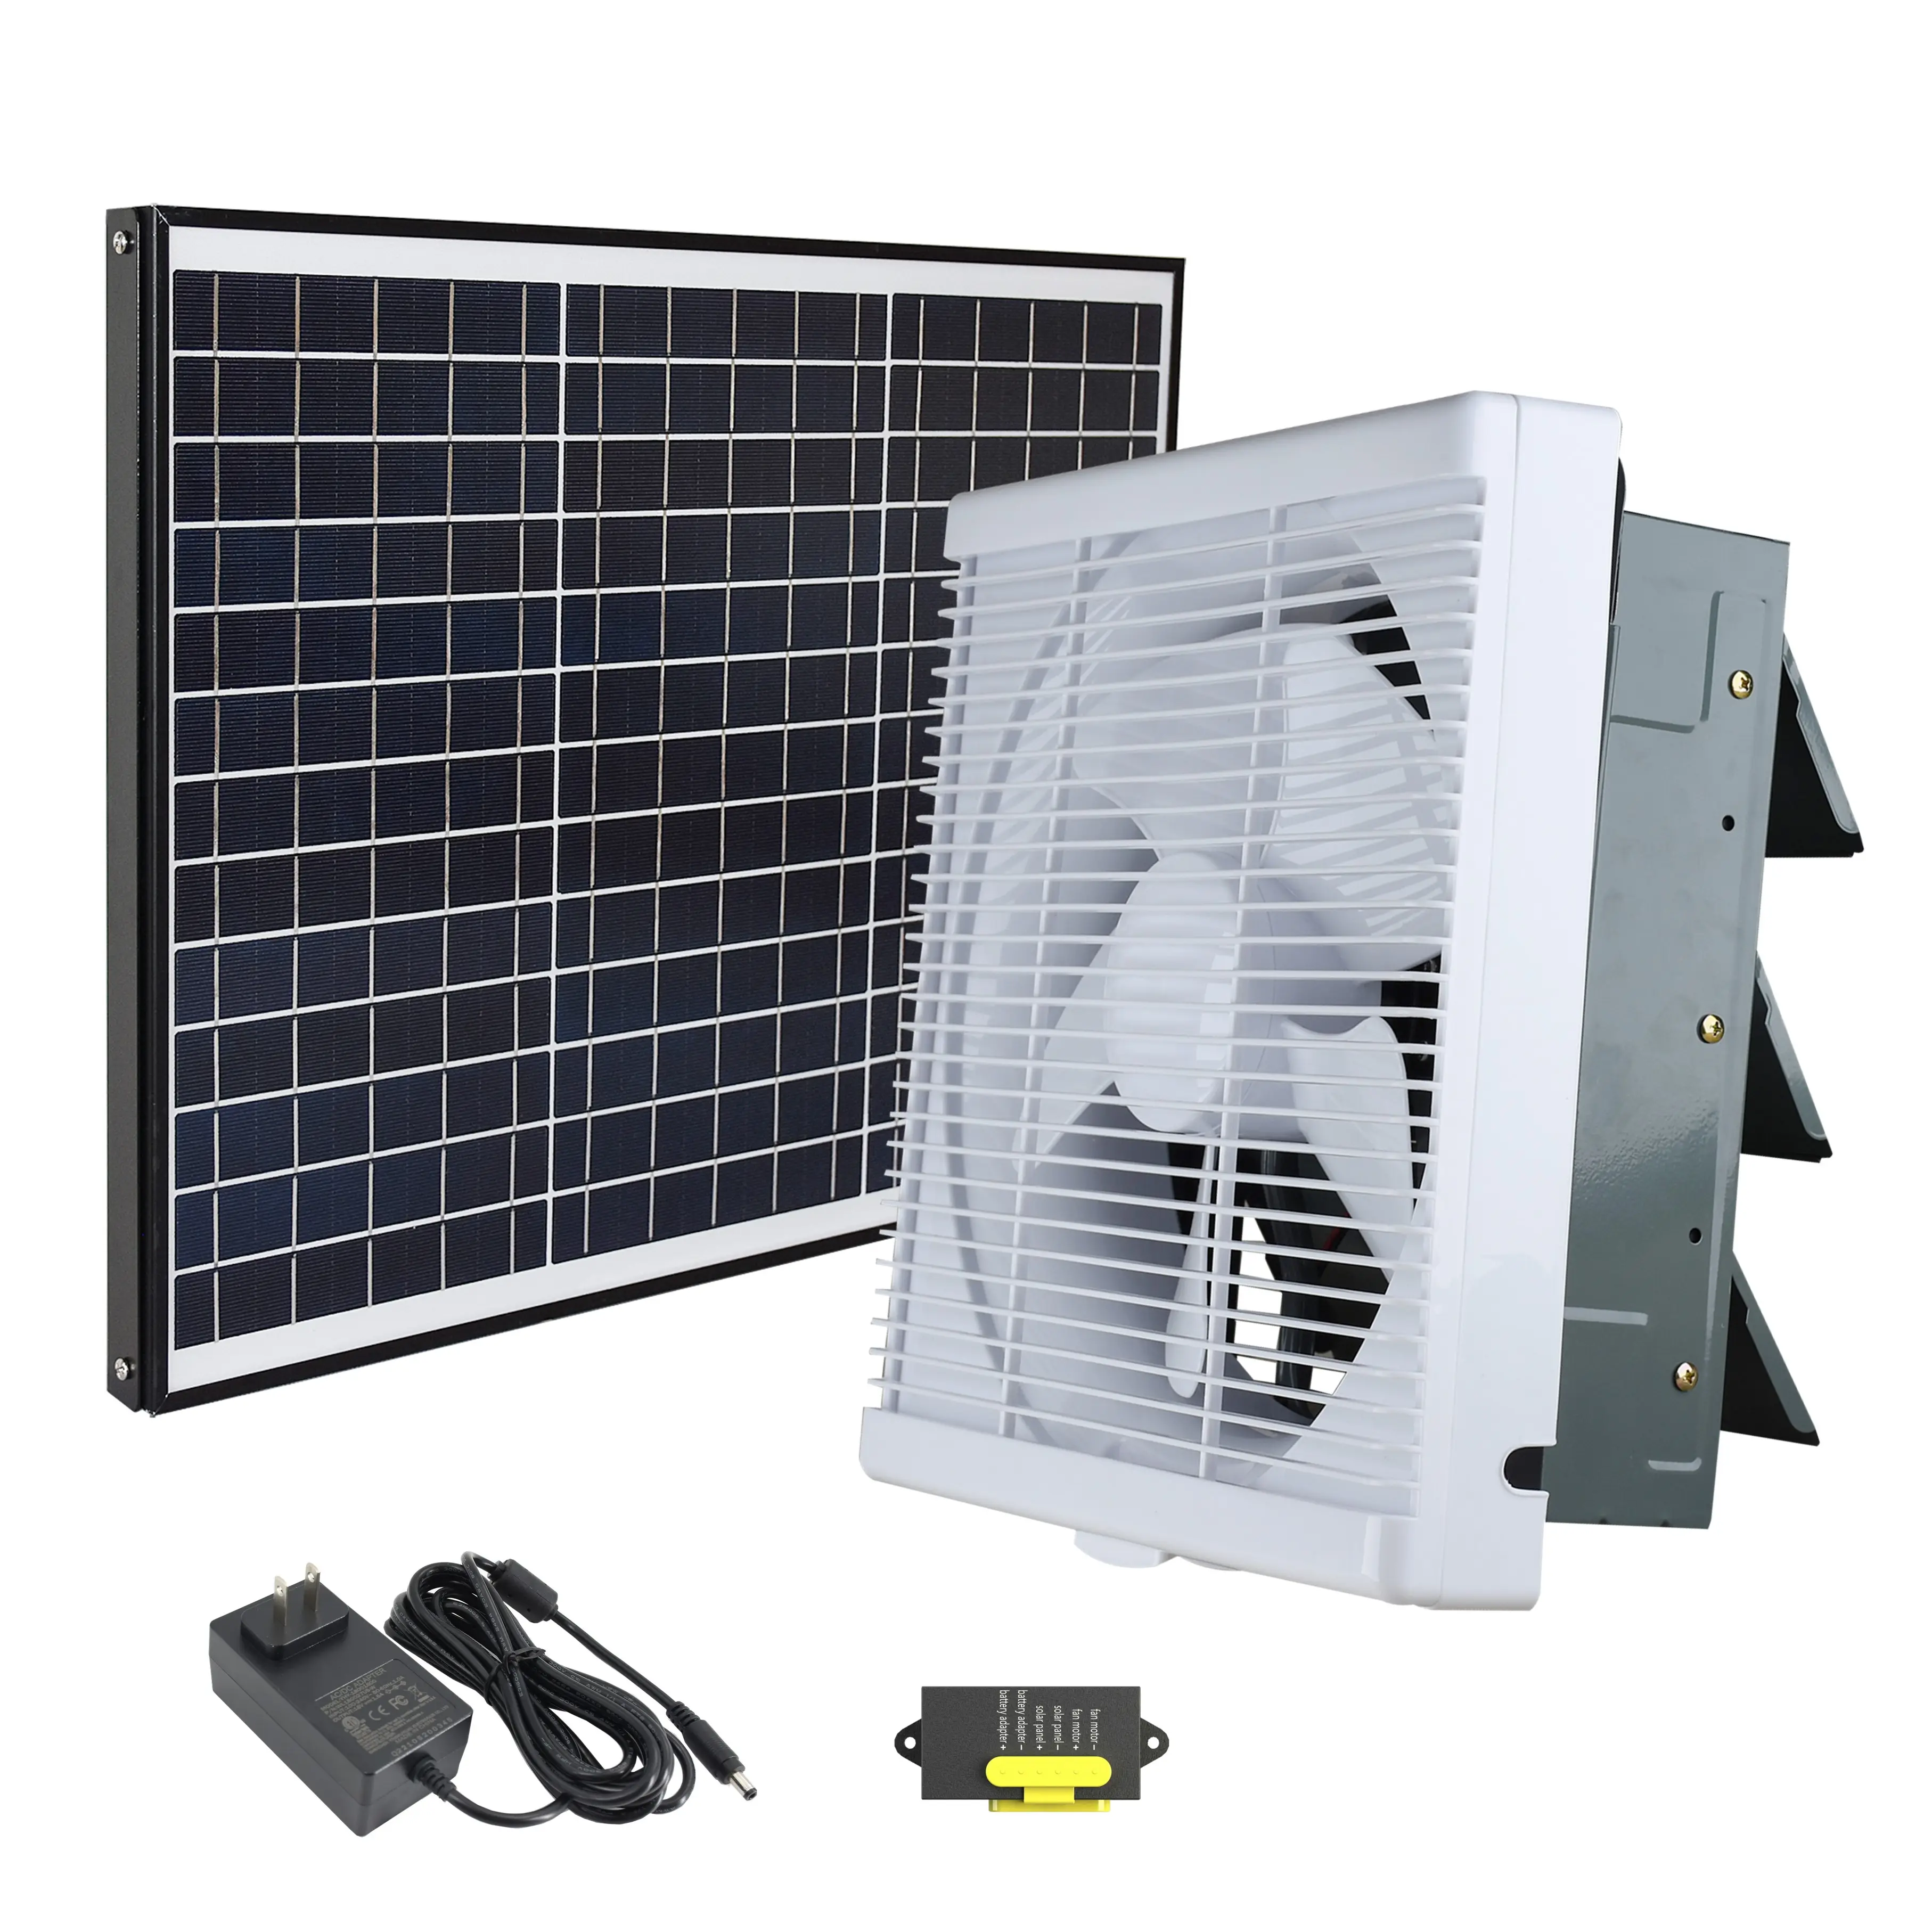 Herramientas HVAC para montar en la pared, ventilador de rejilla Solar de 10 pulgadas, doble potencia, ventilación CC, ventilación interior, ventilador de escape de plástico